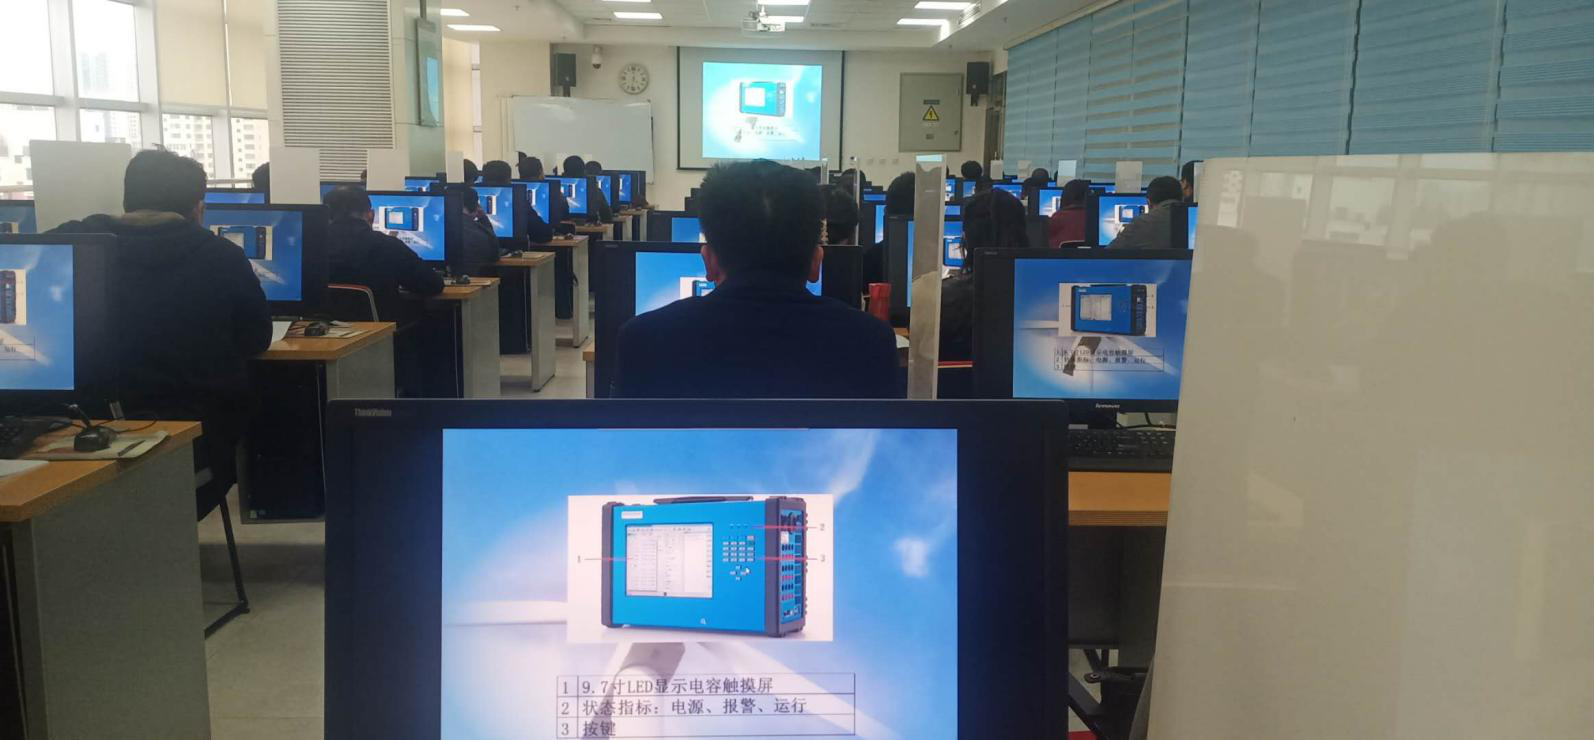 O treinamento KF86 foi realizado com sucesso na província de Gansu.